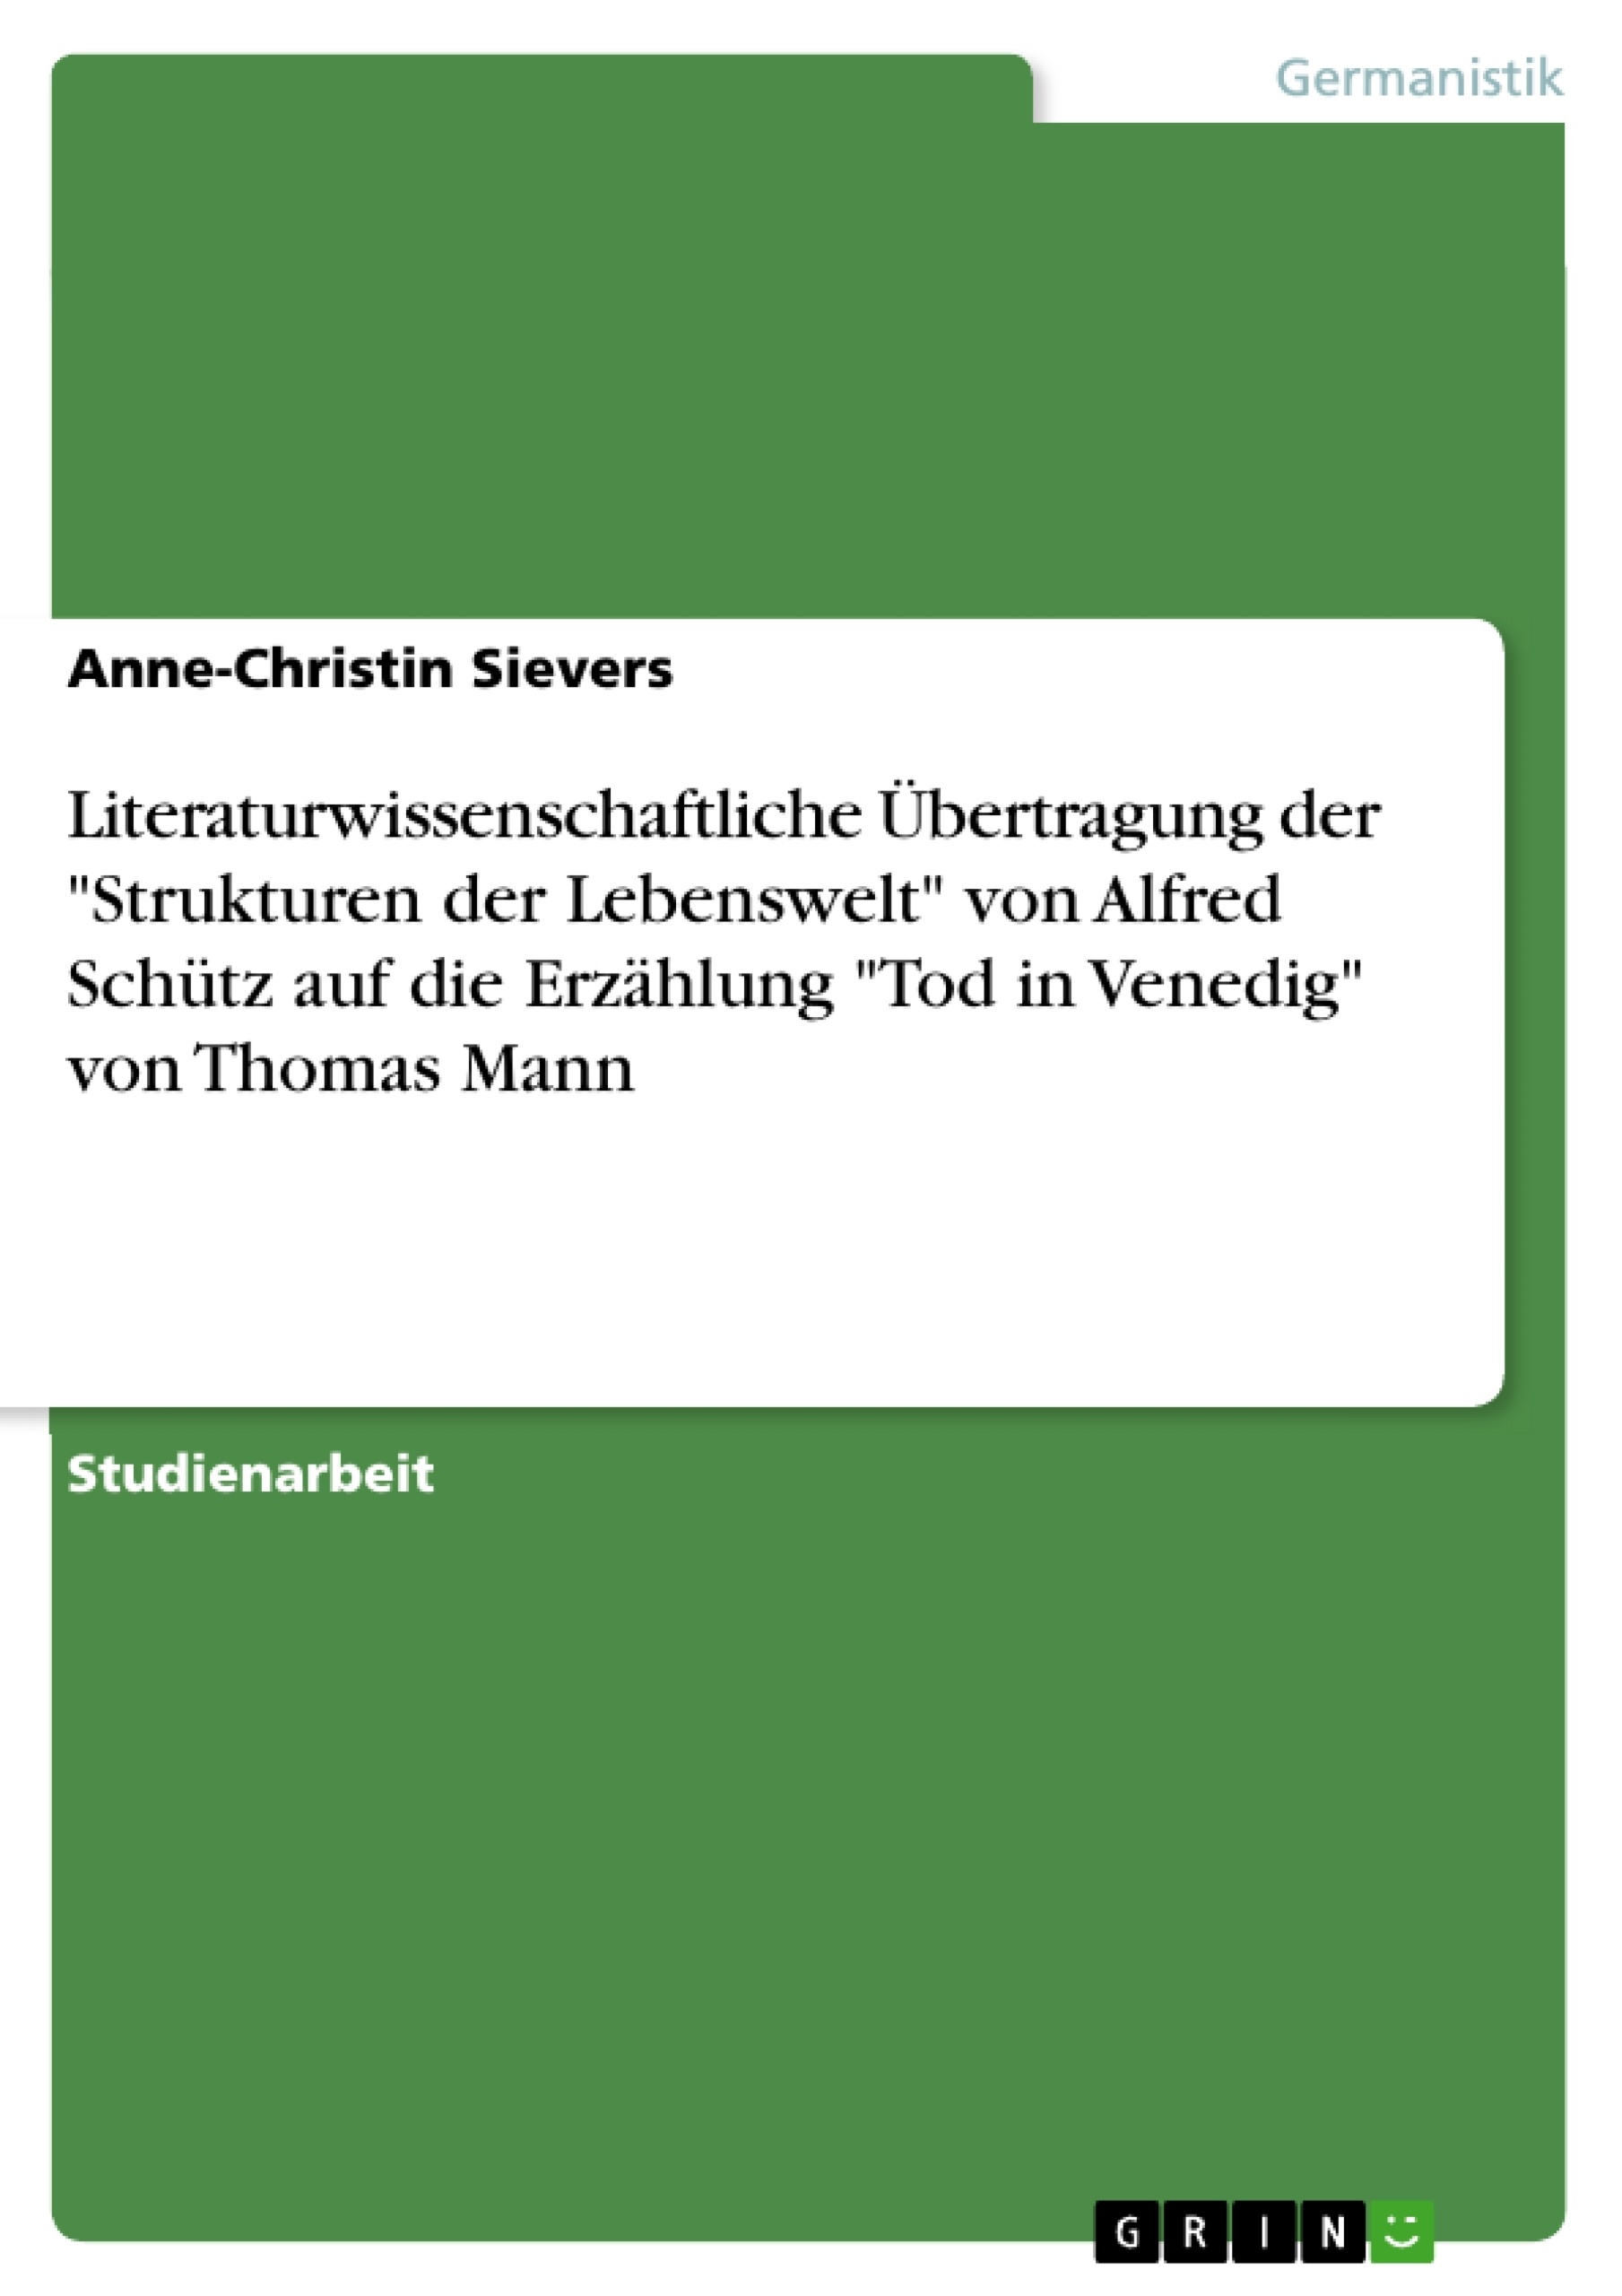 Título: Literaturwissenschaftliche Übertragung der "Strukturen der Lebenswelt" von Alfred Schütz auf die Erzählung "Tod in Venedig" von Thomas Mann